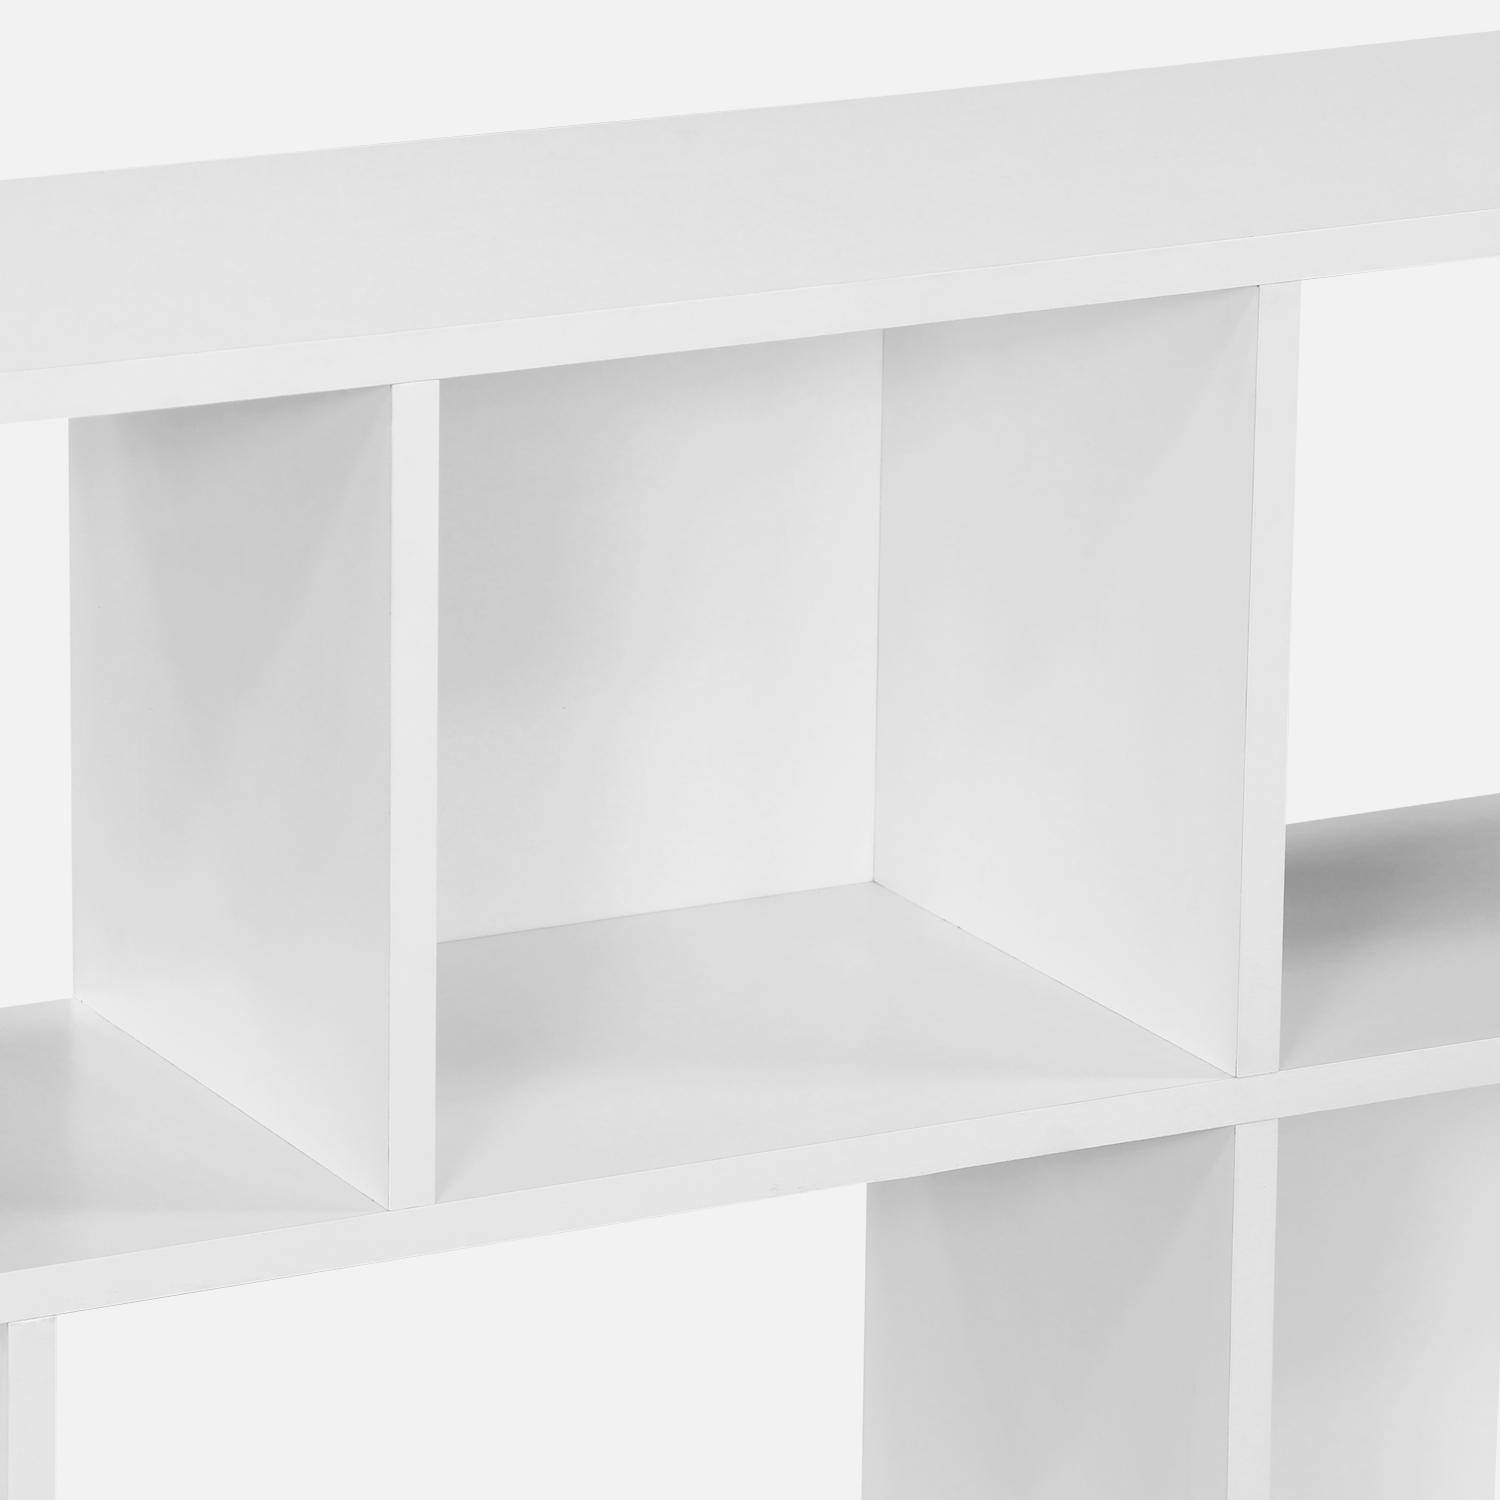 Bibliothèque design asymétrique blanche, Pieter, 3 étagères, 12 compartiments de rangement Photo6